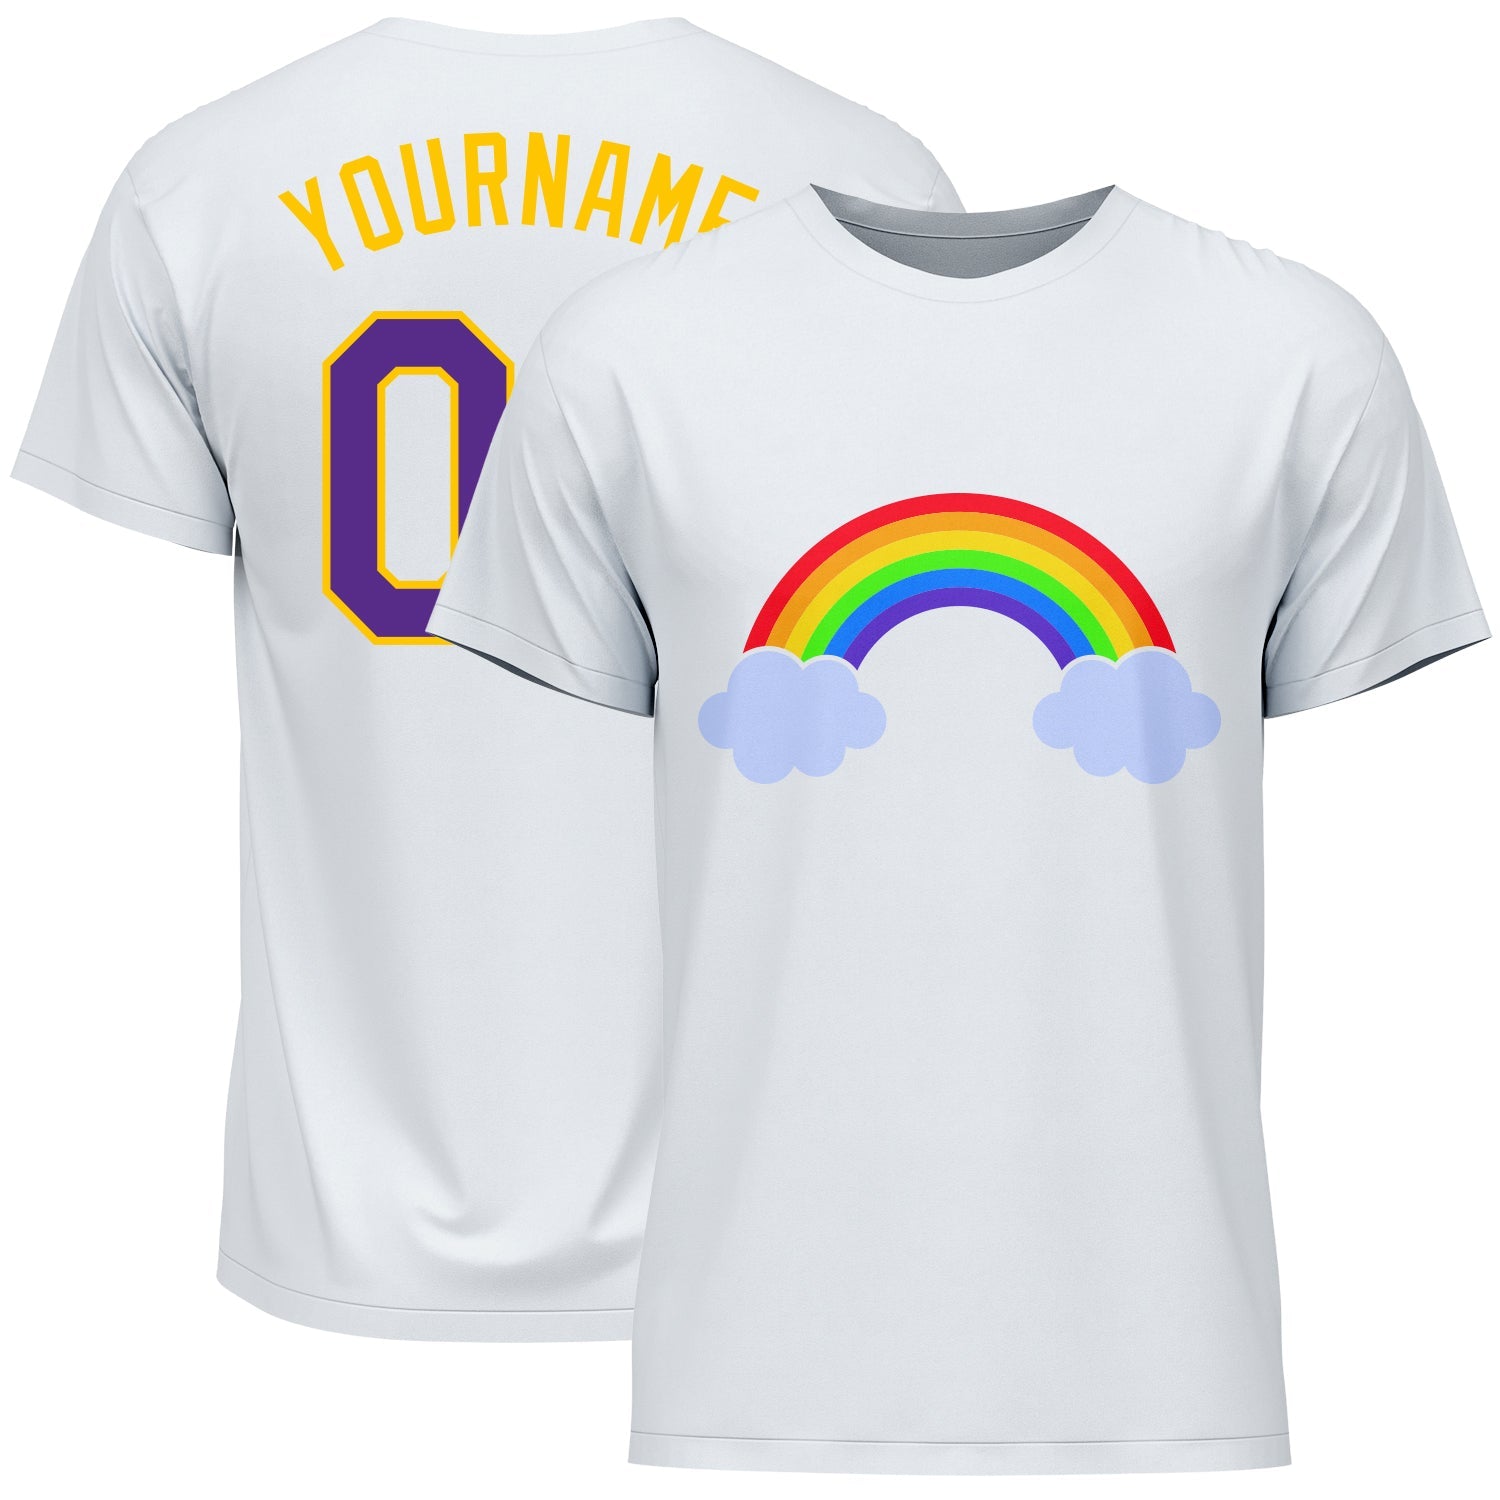 Camiseta de encargo del funcionamiento del arco iris del Púrpura-oro blanco para el orgullo LGBT